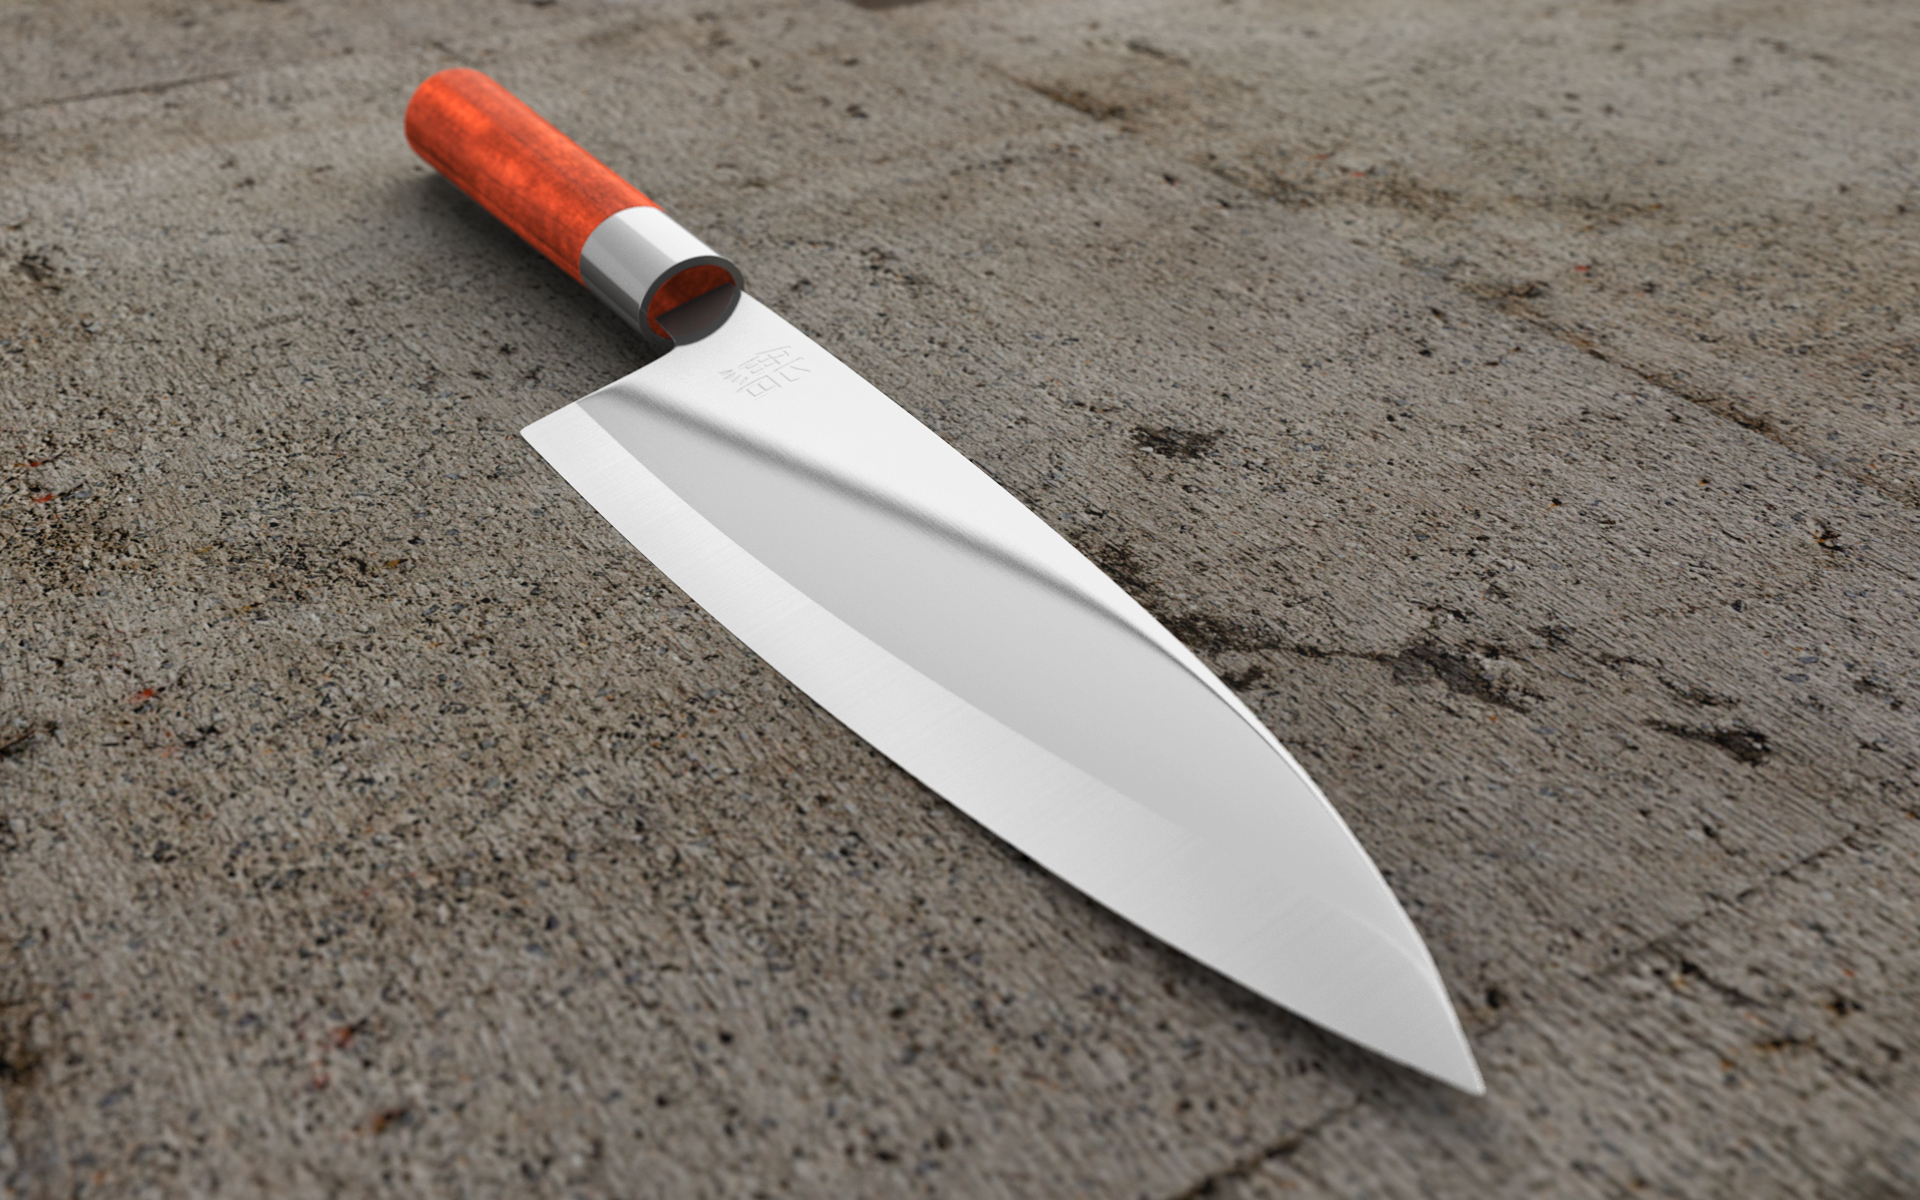 3D-Visualisierung eines Sushi-Messers, das auf Beton liegt